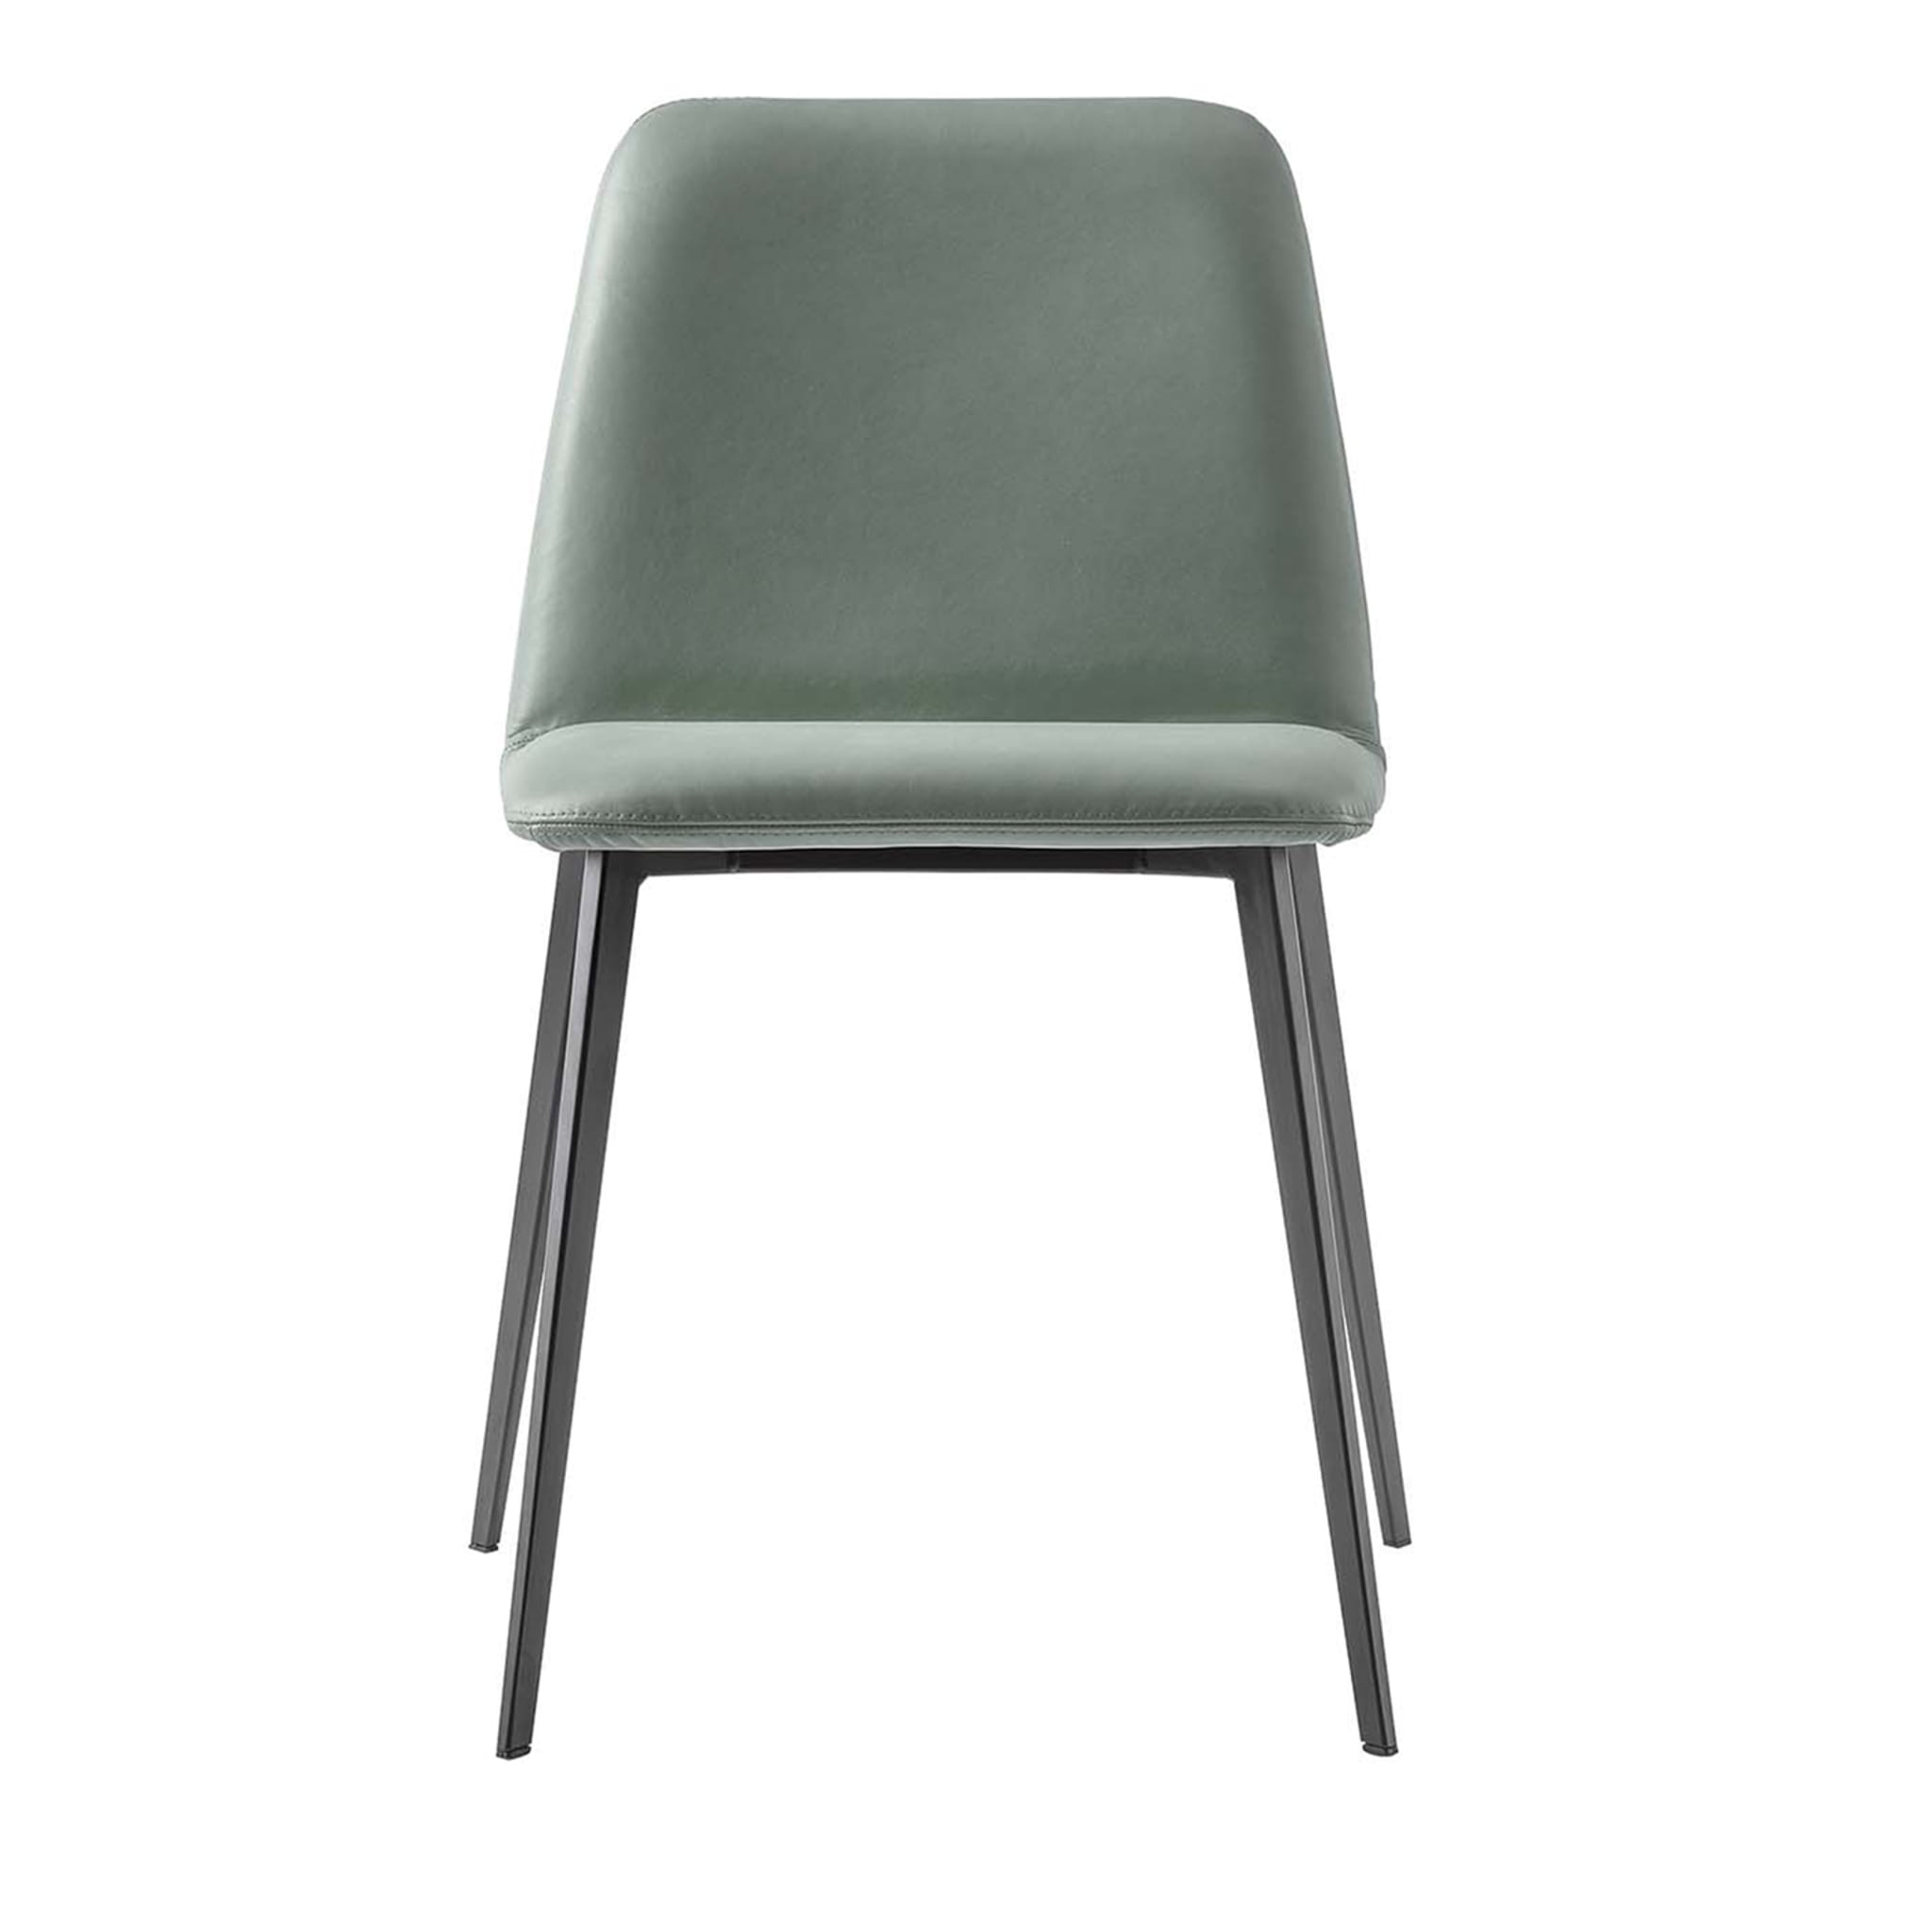 Bardot Green Chair by Emilio Nanni - Main view